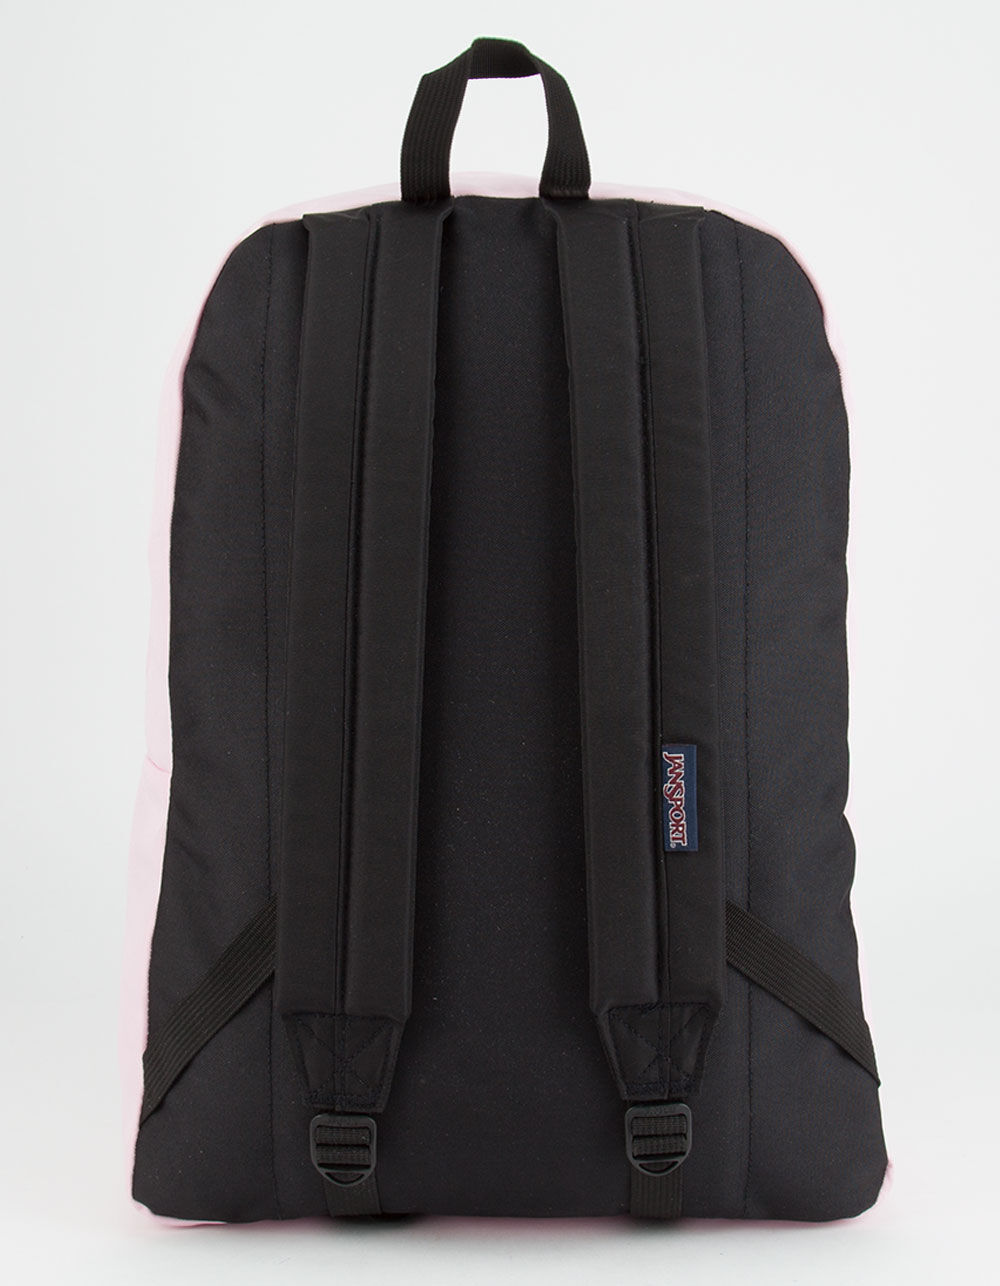 Tilly's JanSport SuperBreak Backpack Gray Lifetime Warranty,NWOT 